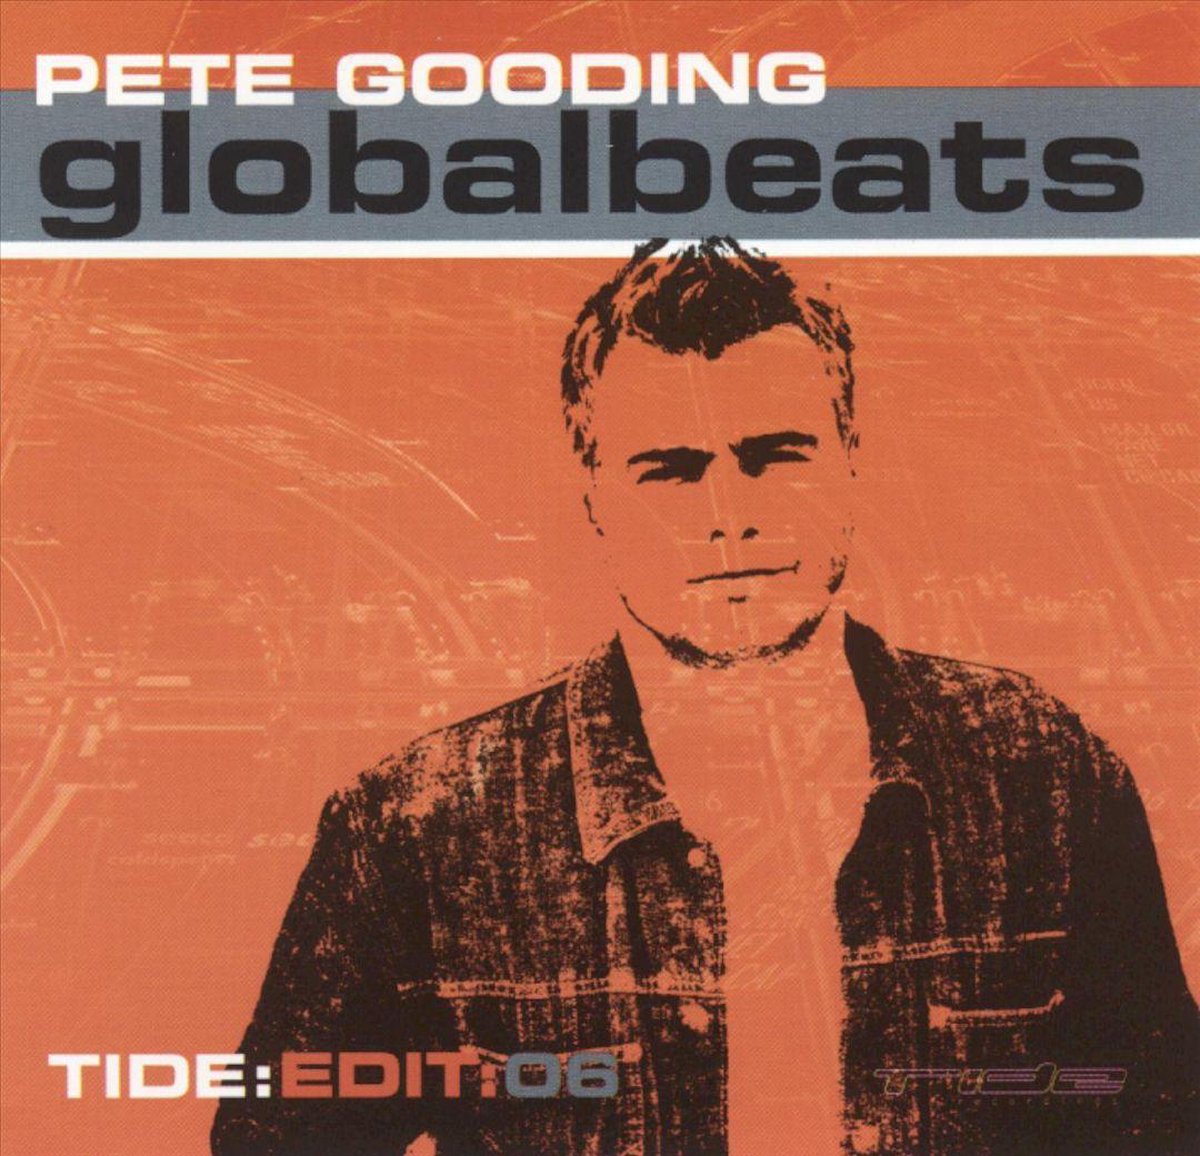 Global Beats - Pete Gooding